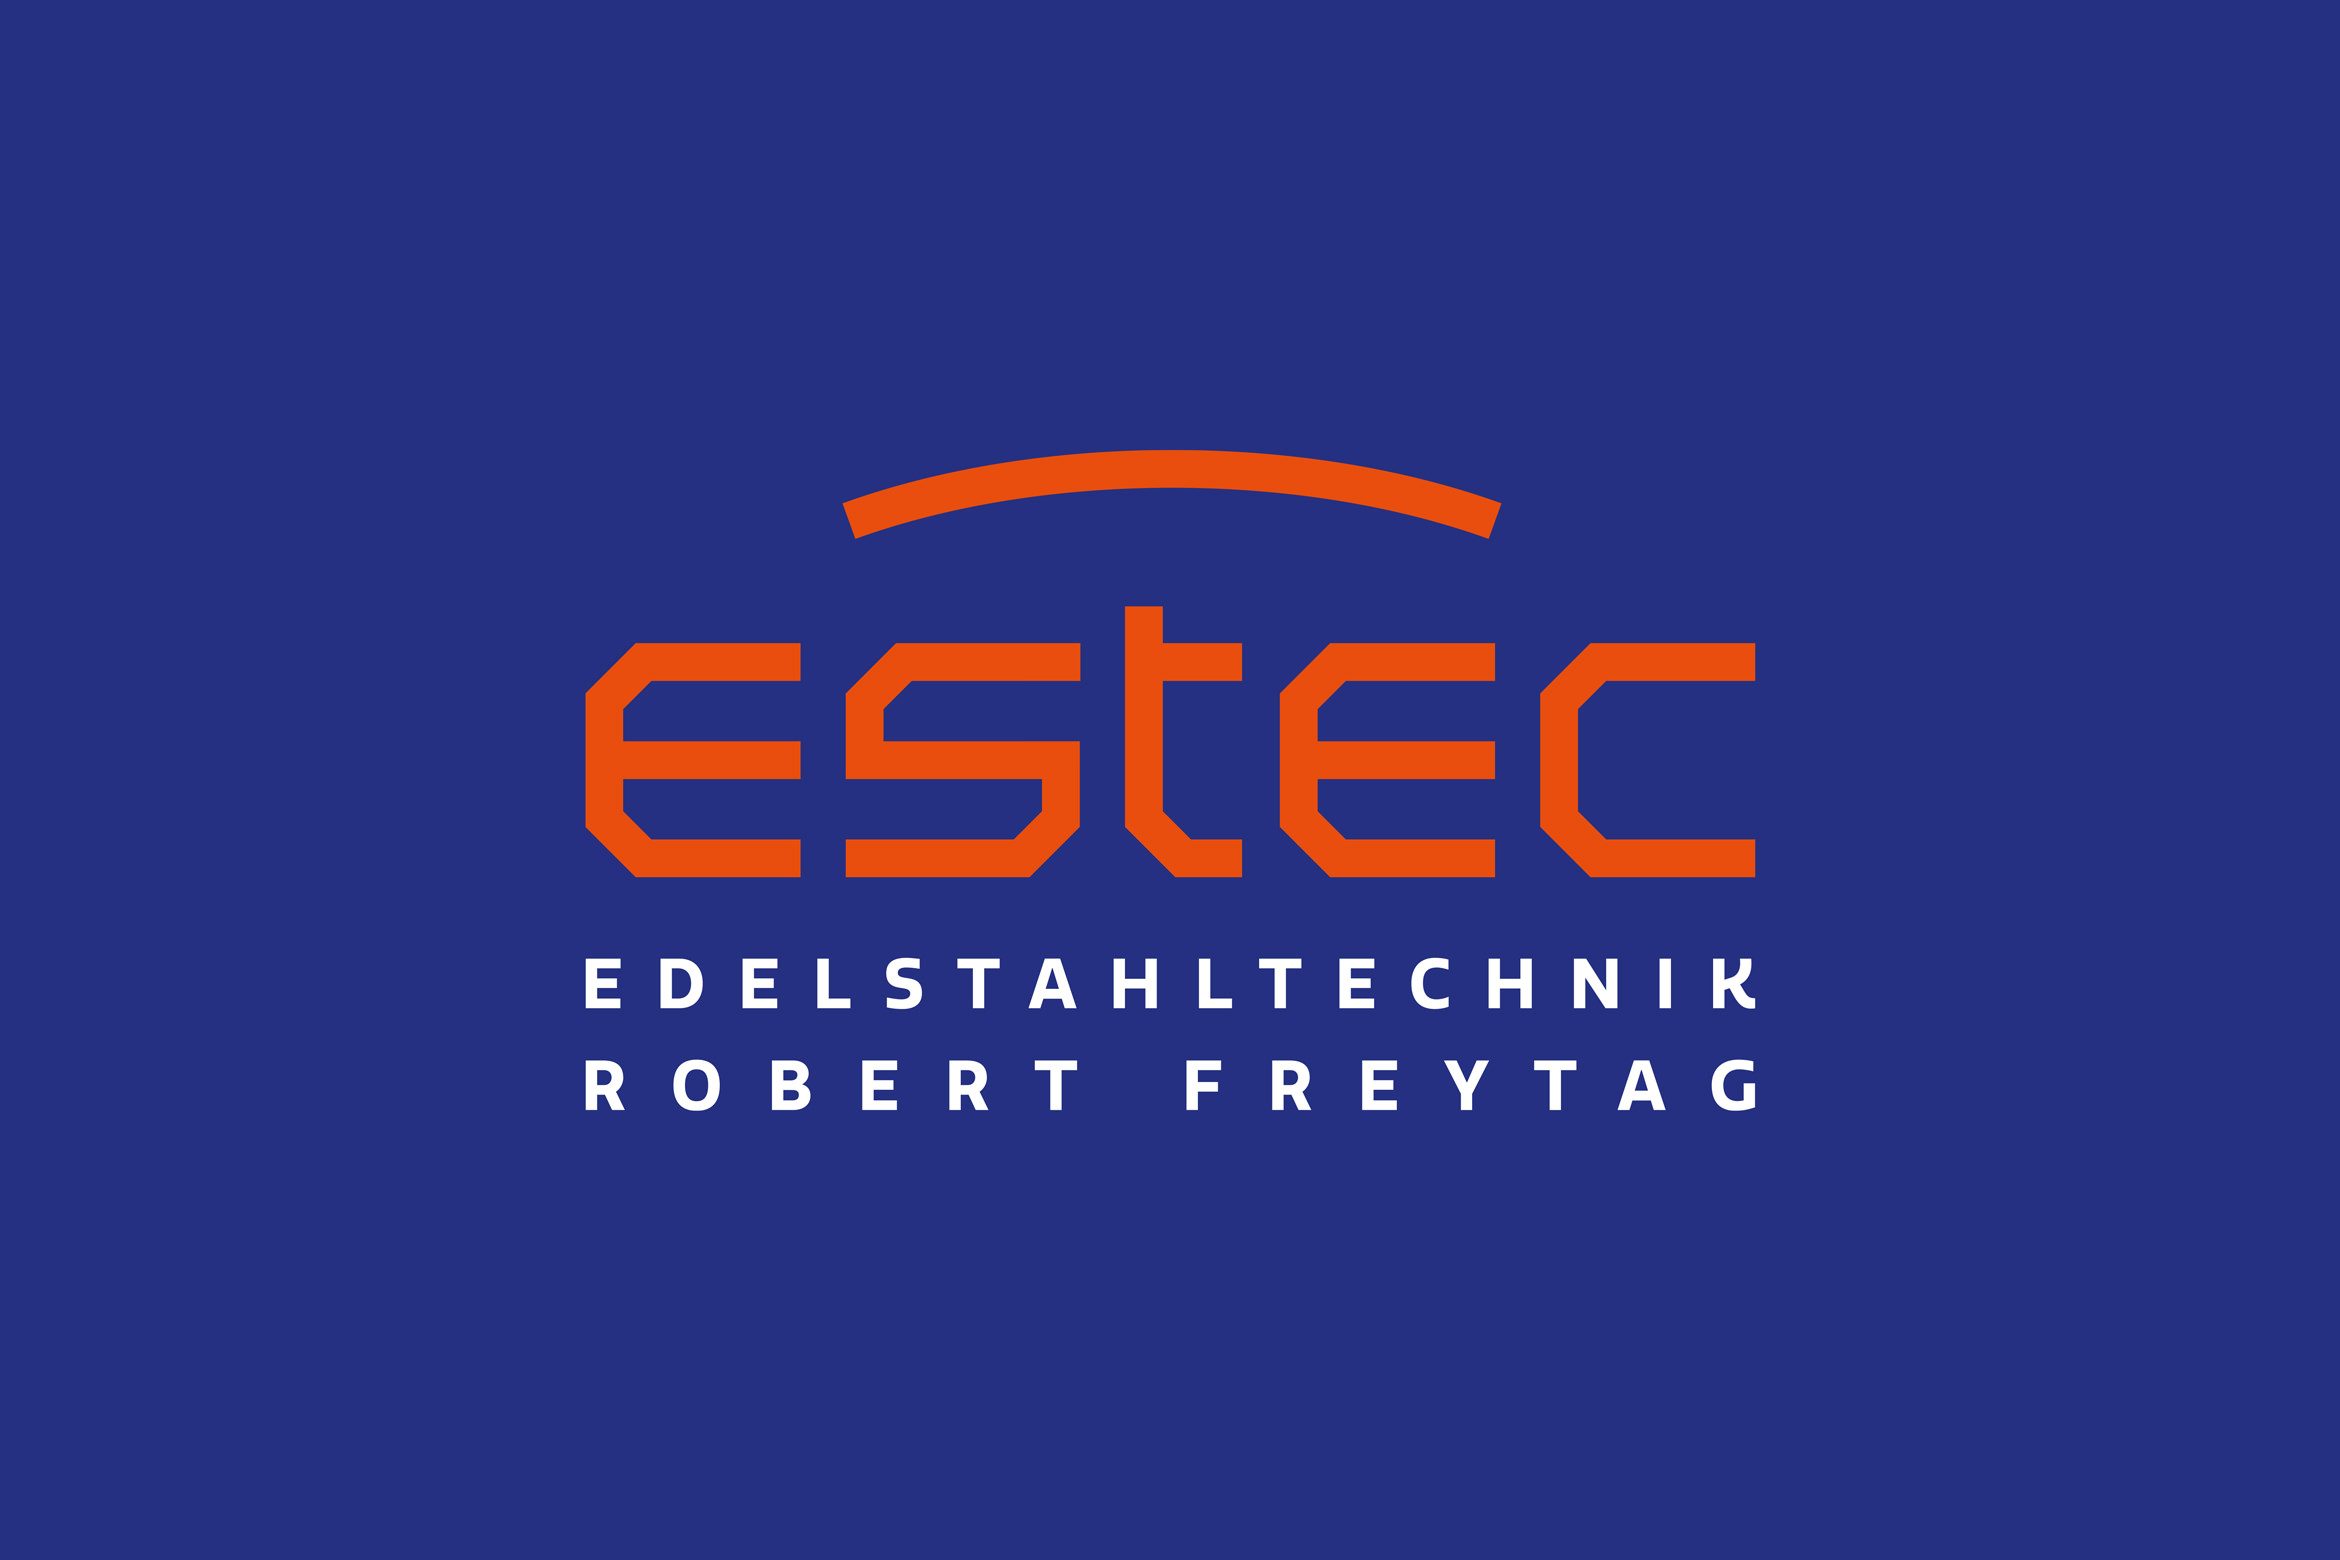 b_estec_logo_4